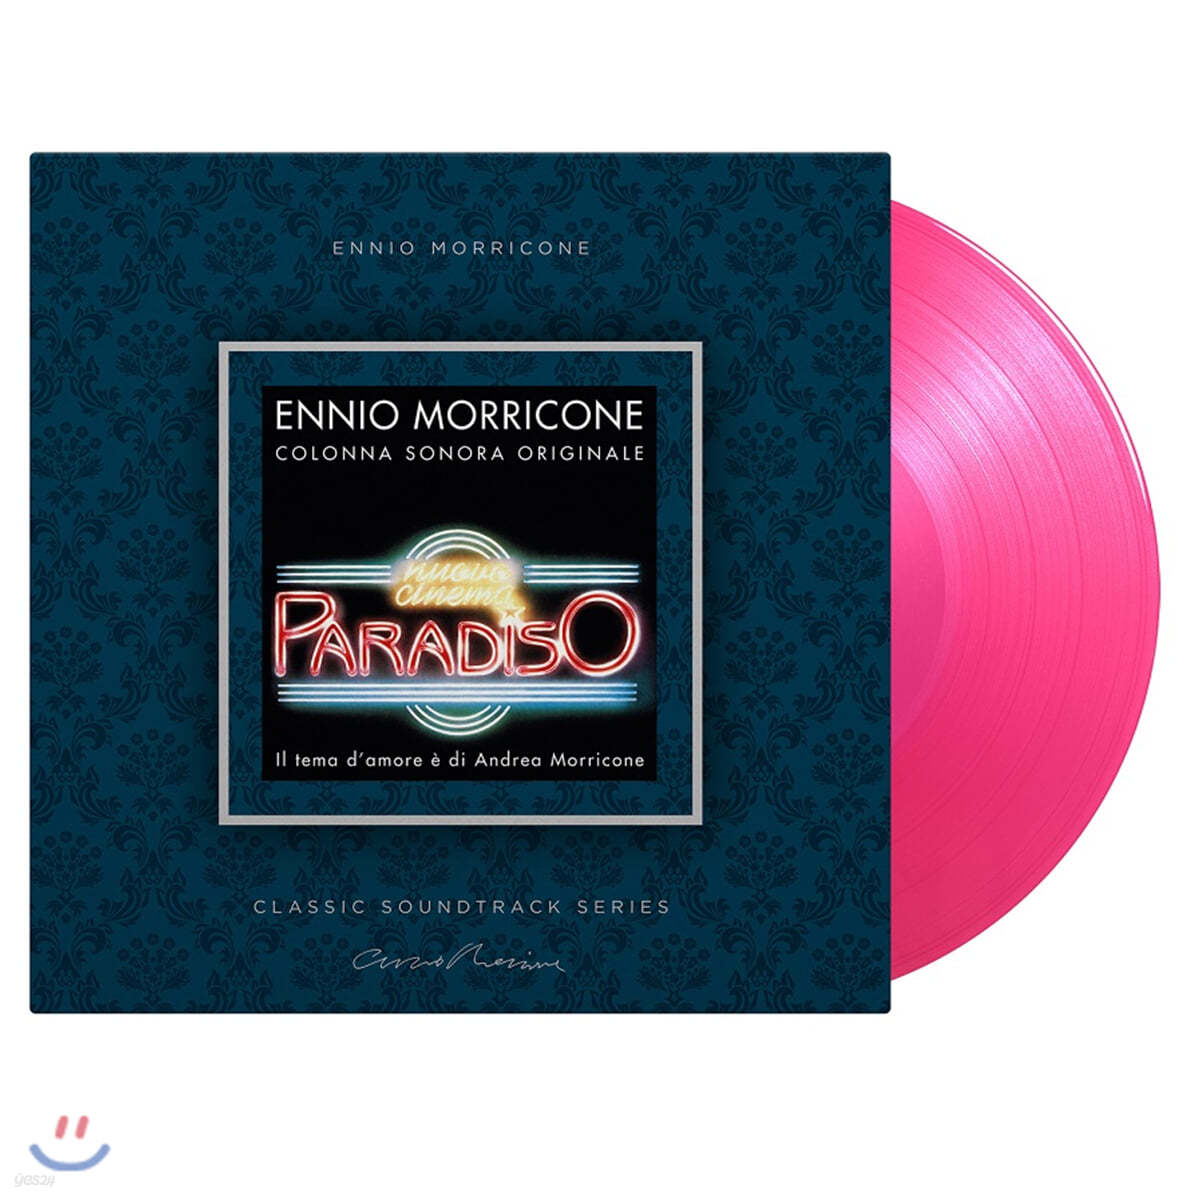 시네마 천국 영화음악 (Nuovo Cinema Paradiso OST by Ennio Morricone 엔니오 모리꼬네) [투명 핑크 컬러 LP]